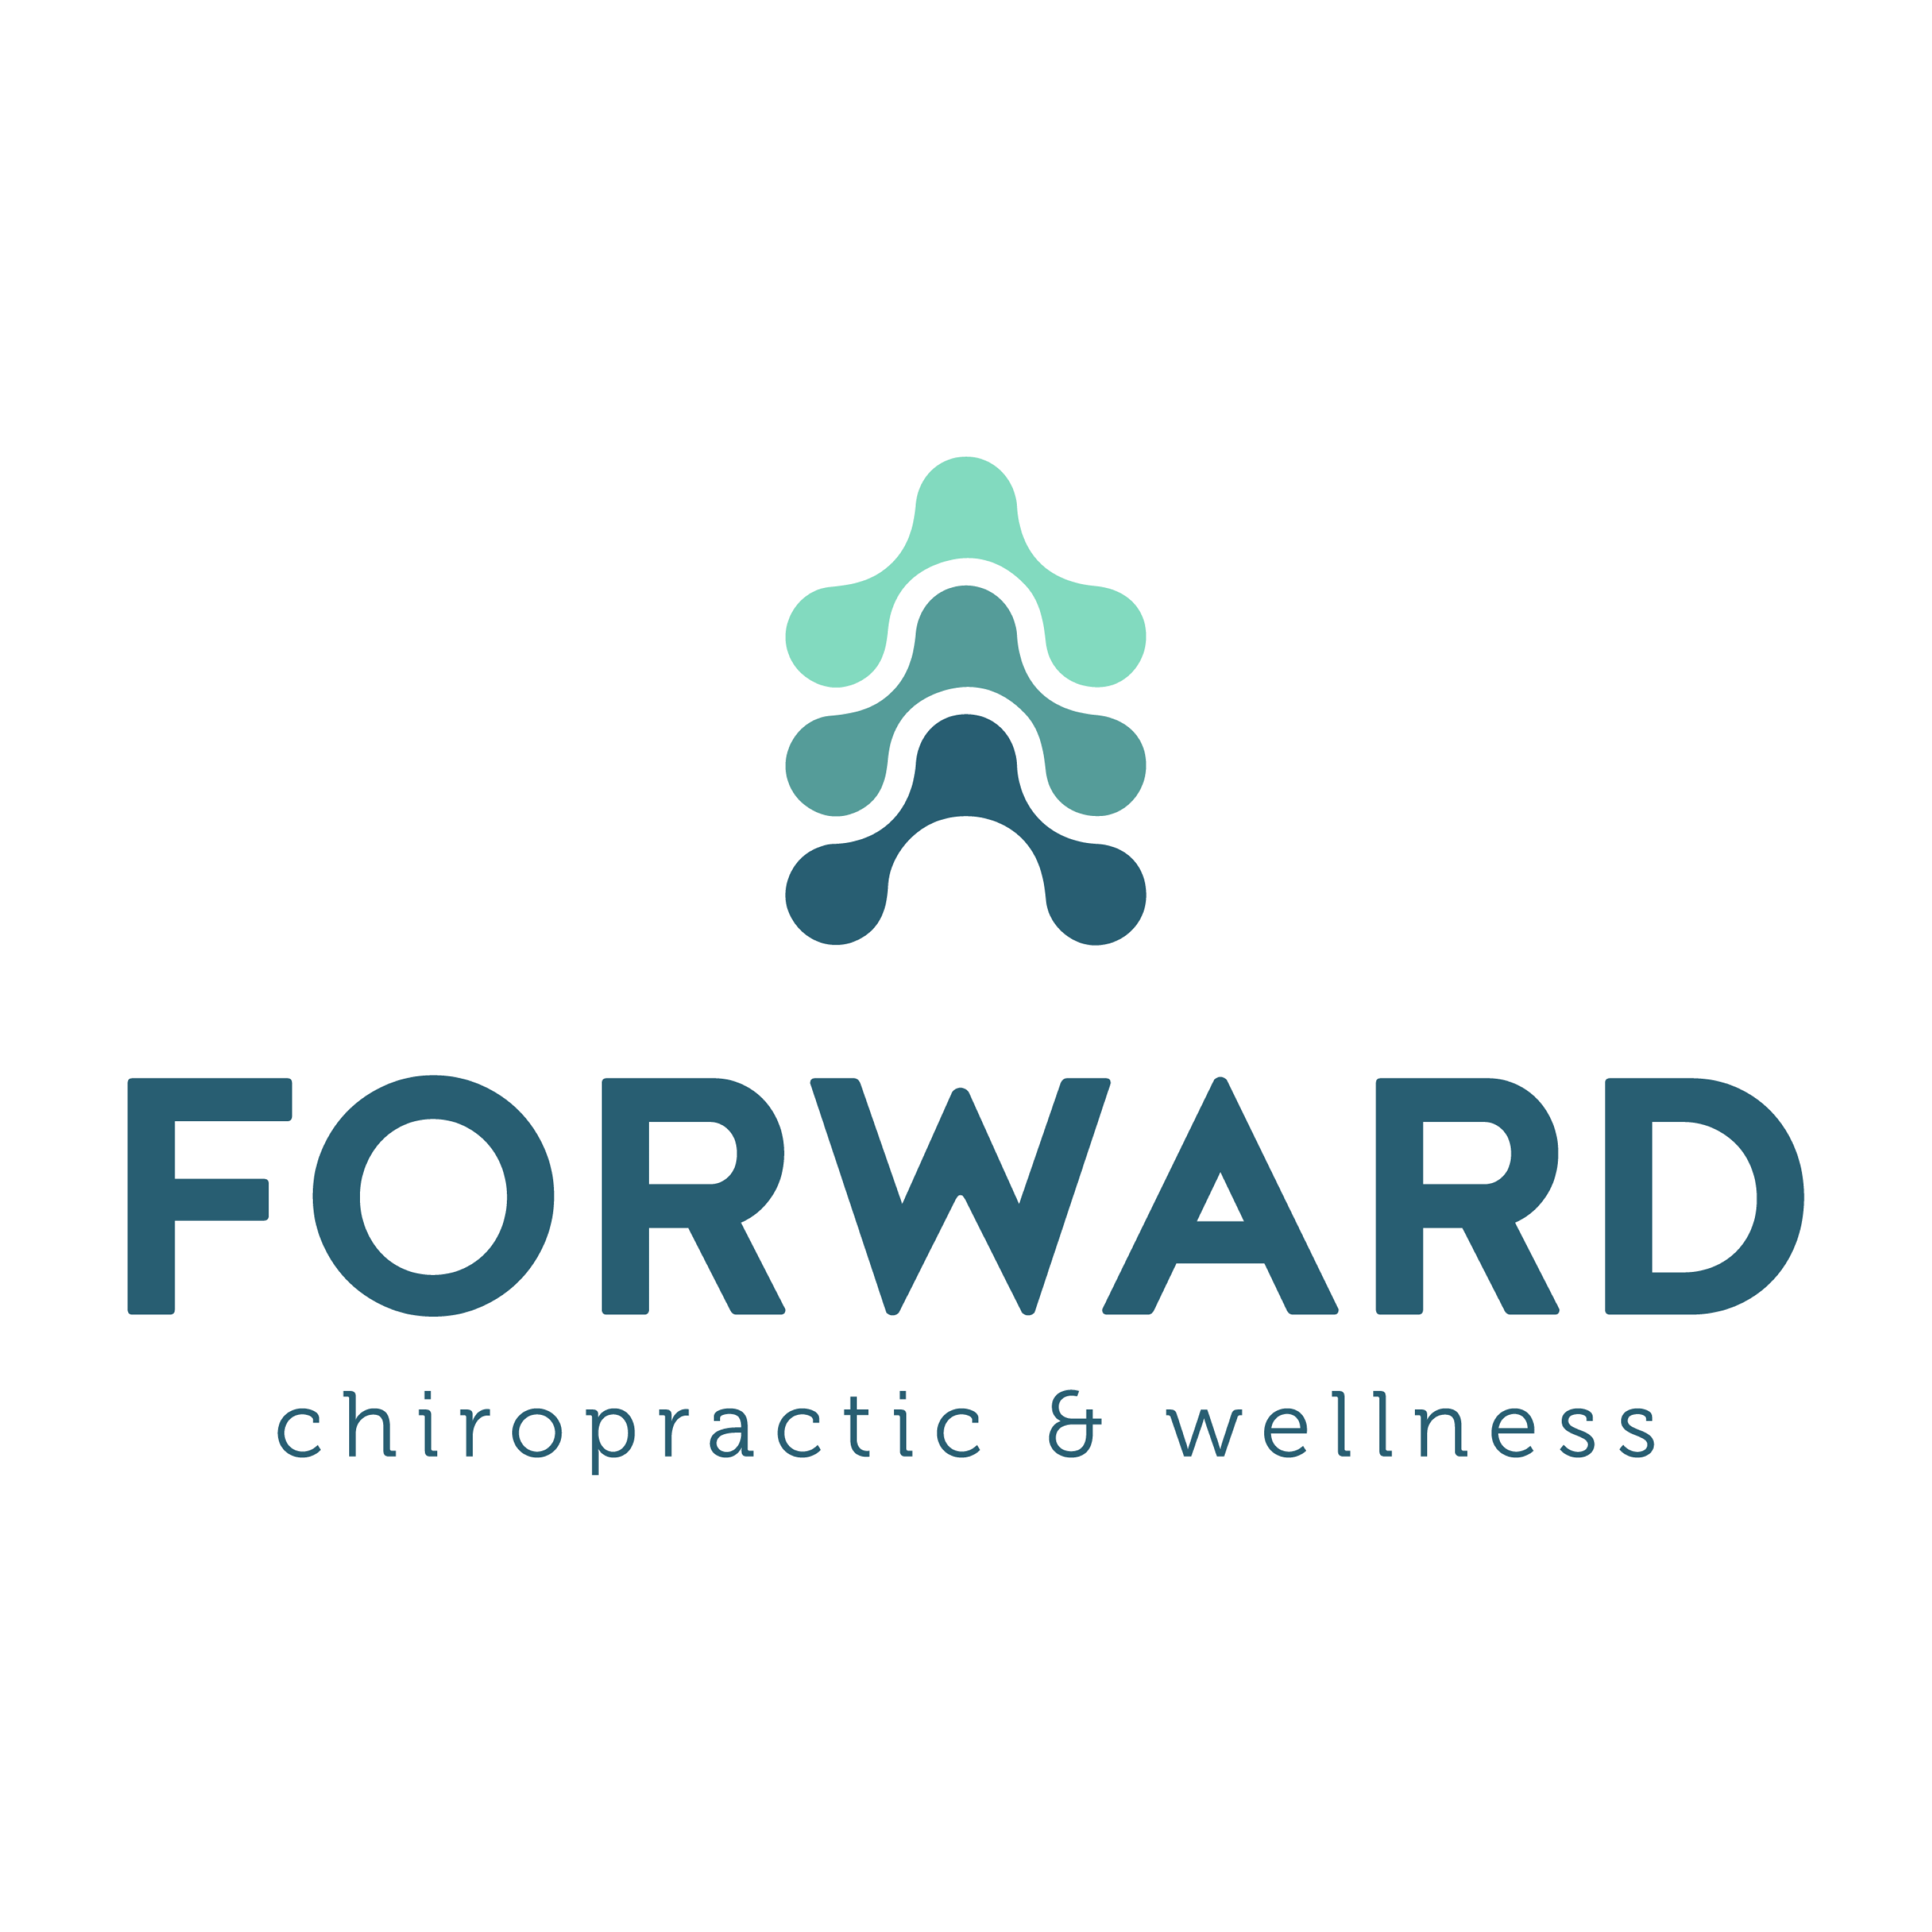 Forward Chiropractic & Wellness - Joshua Ritchie